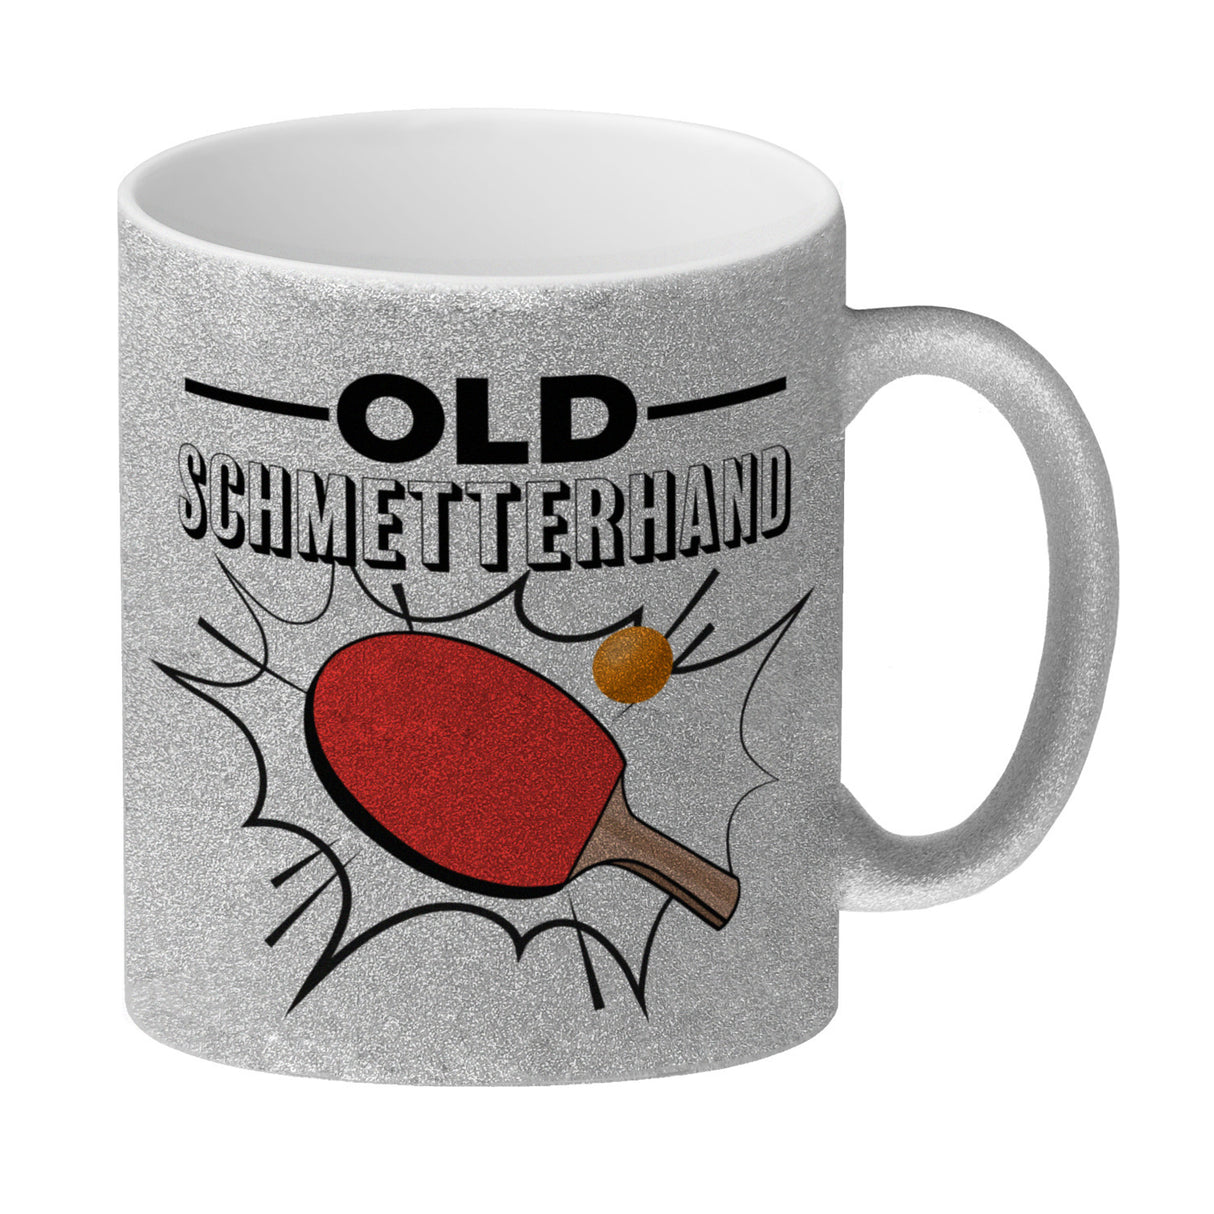 Old Schmetterhand Tischtennis Wortspiel Kaffeebecher